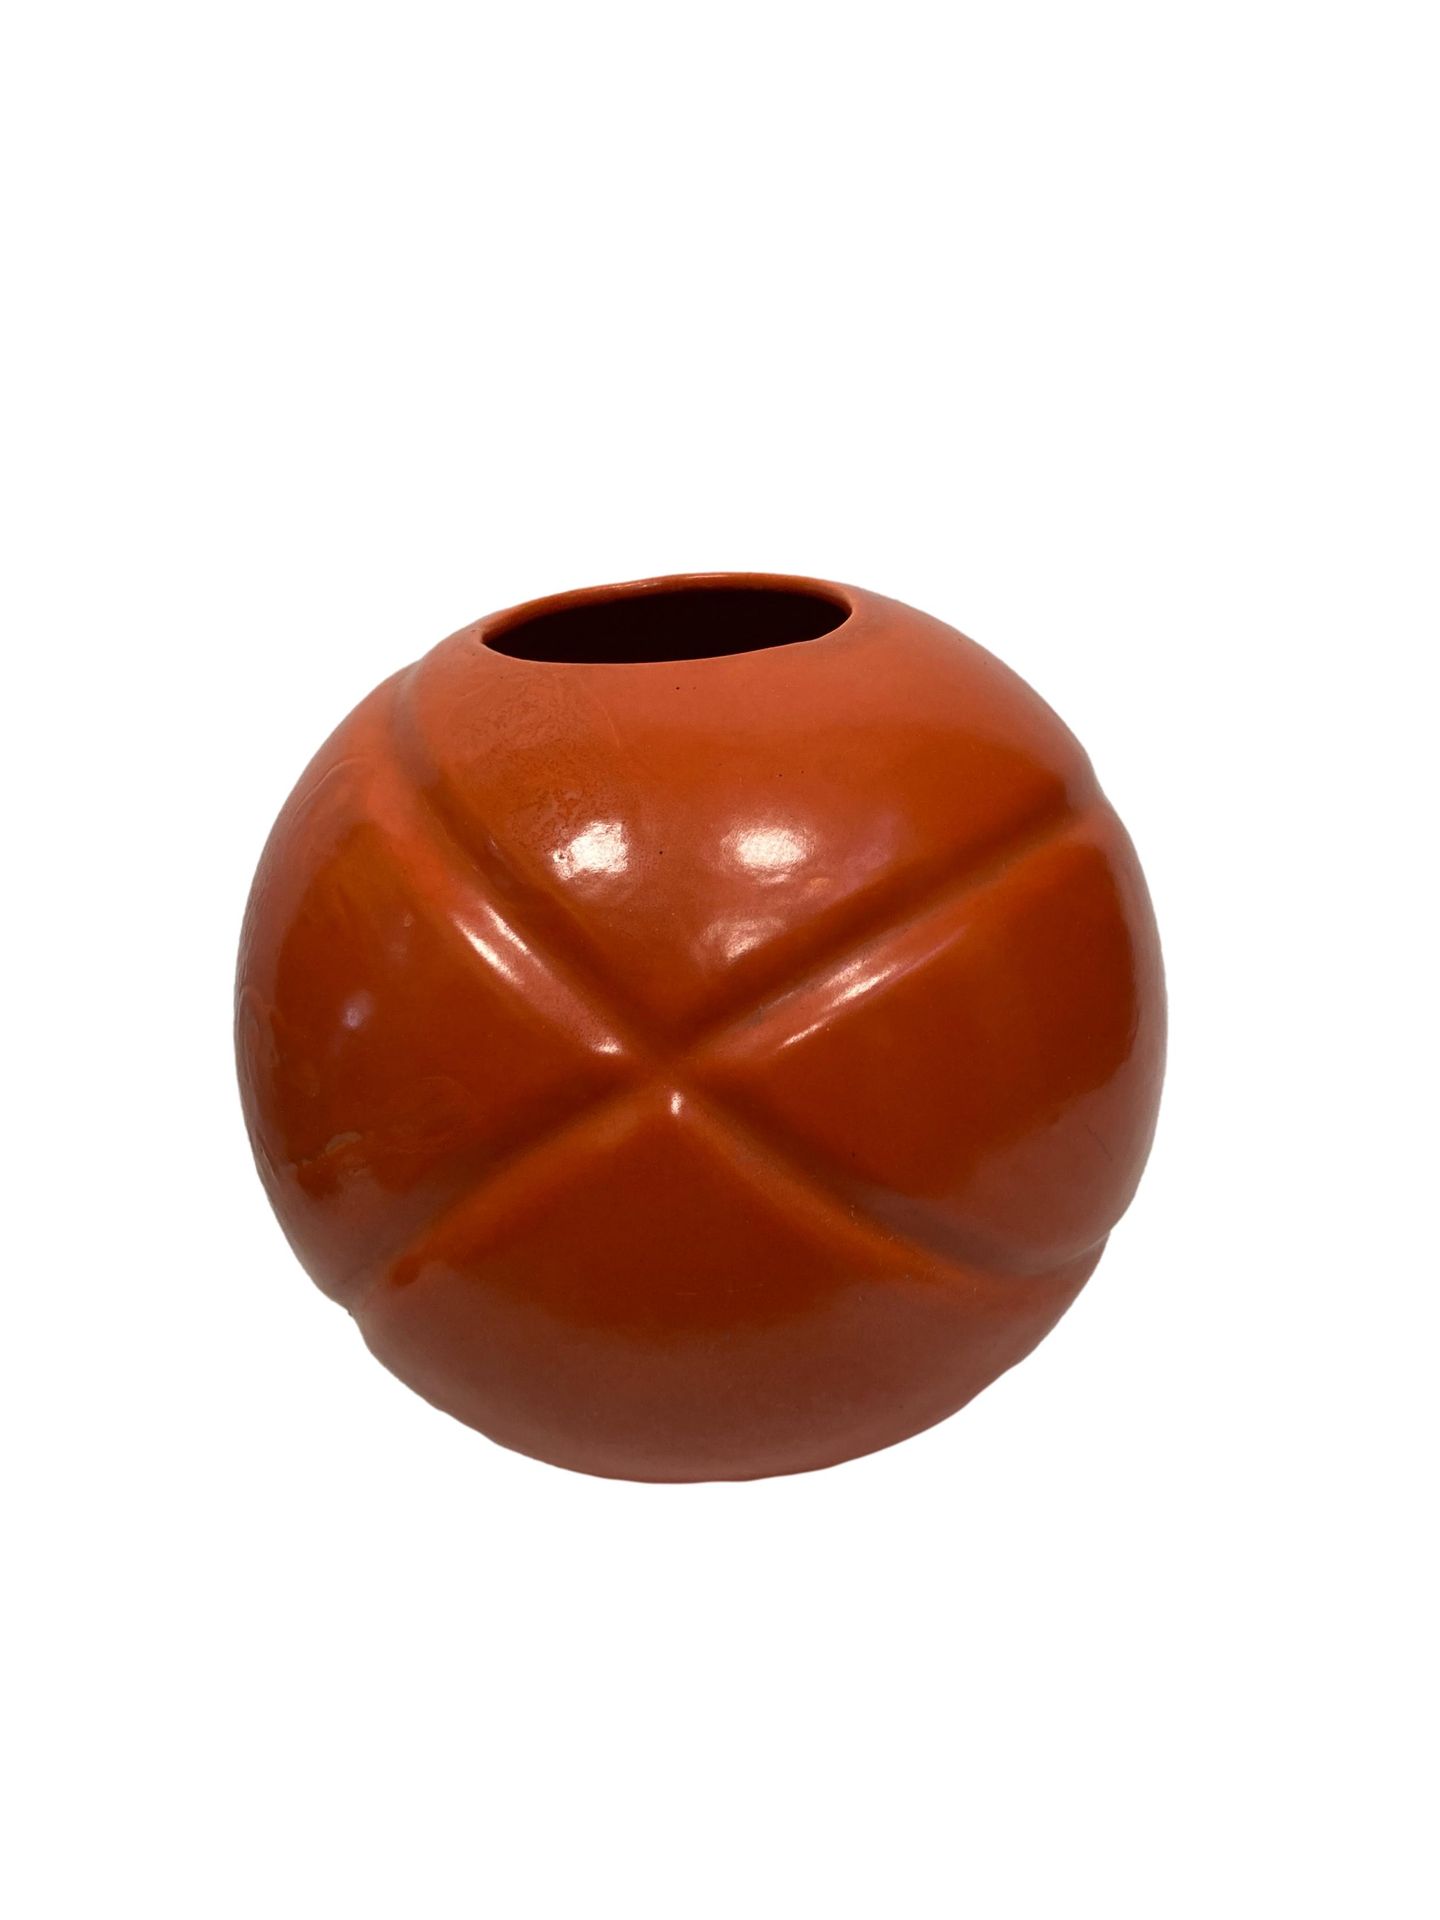 Null STANLEY

Vaso a sfera in ceramica smaltata corallo policromo

H. 23 cm